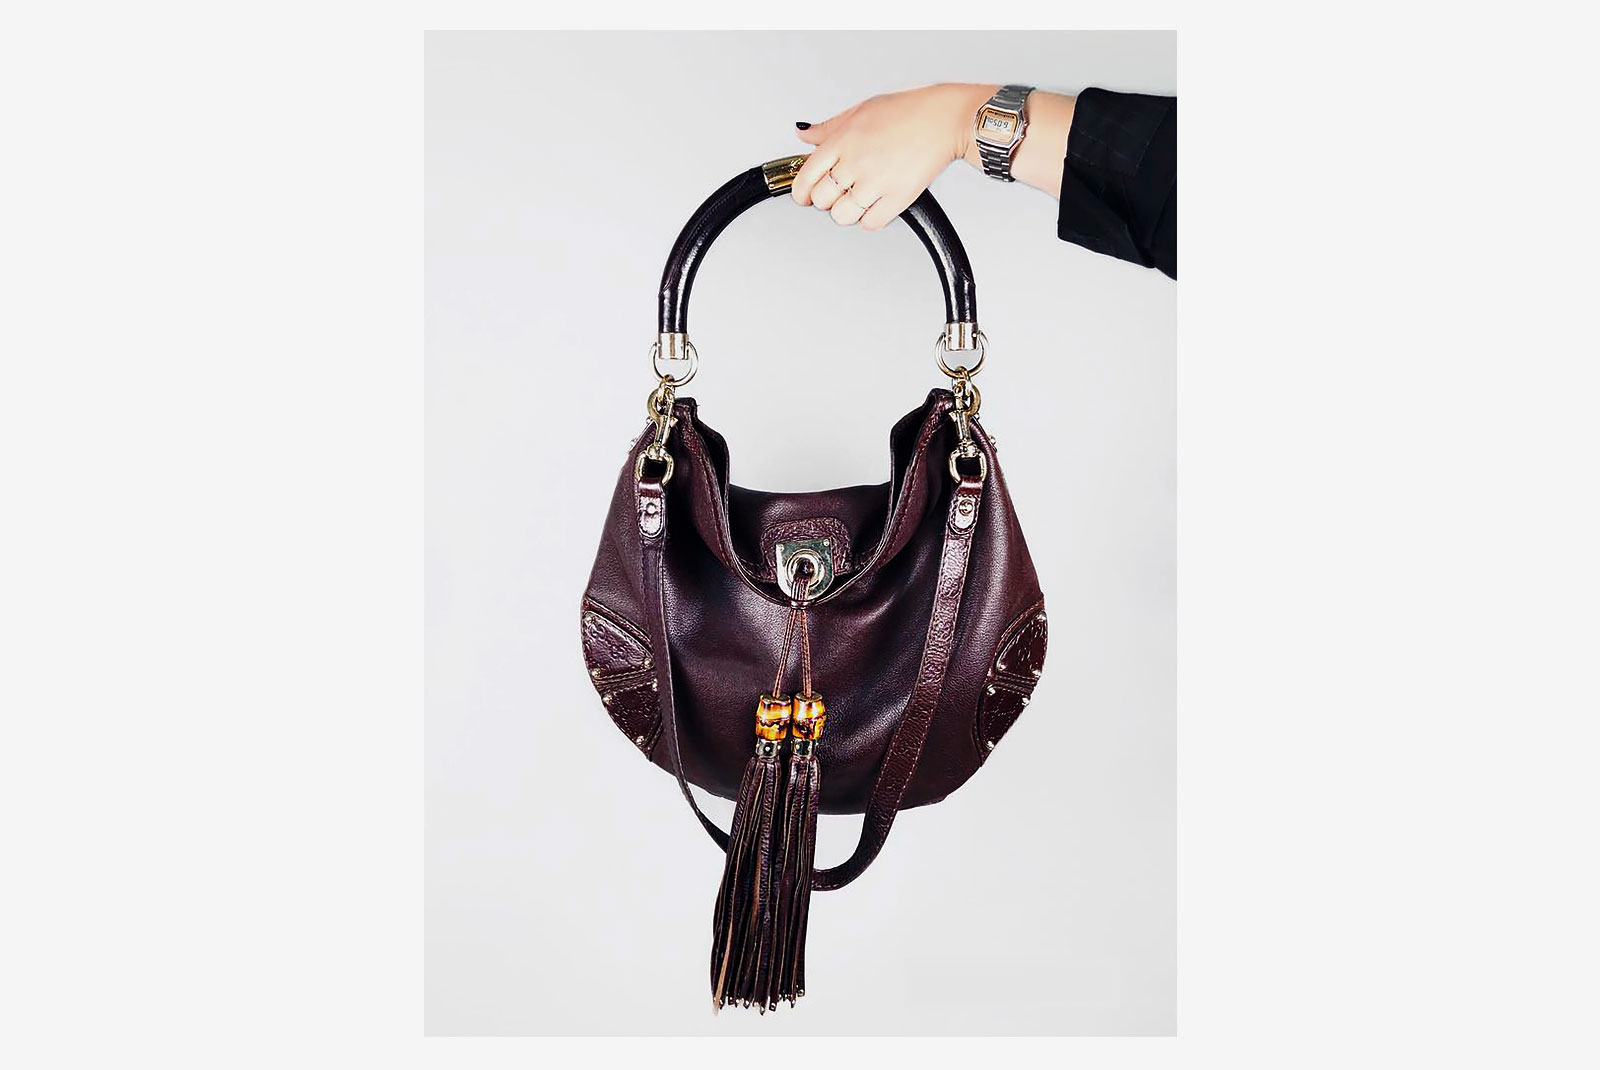 Люксовая сумка не за безумные тысячи: почему это модно и где ее купить